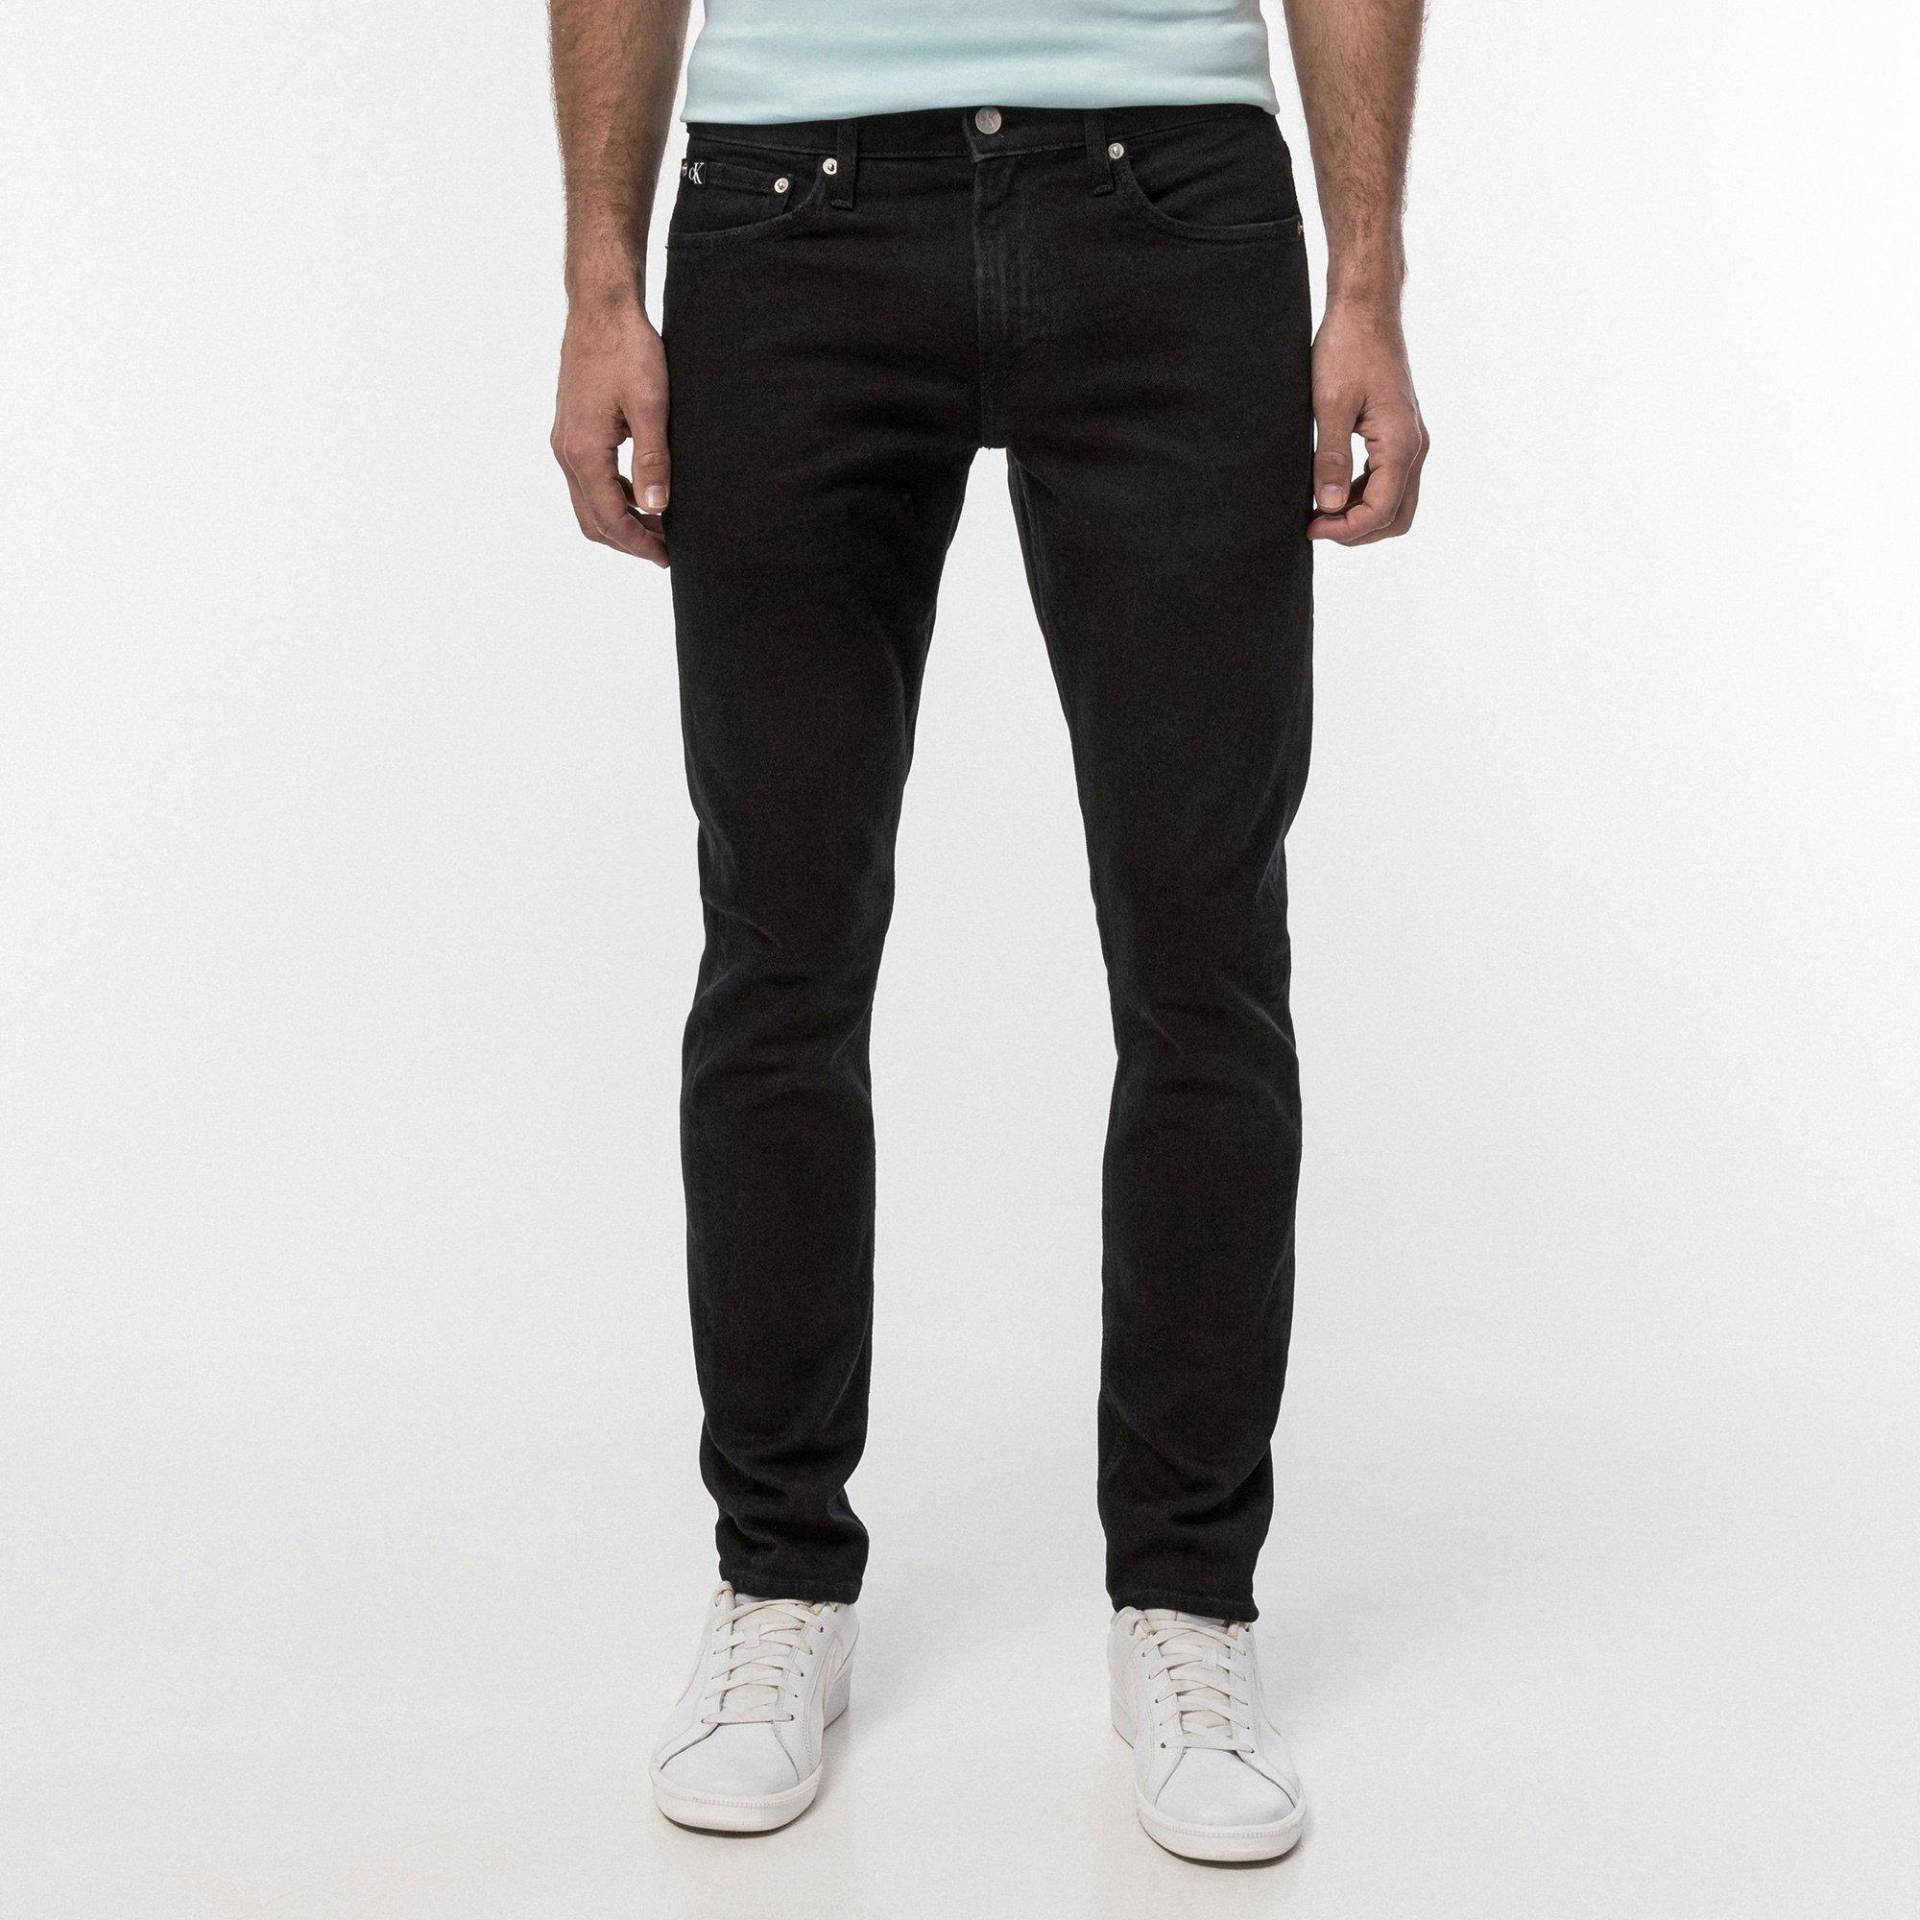 Jeans, Slim Fit Herren Black L32/W29 von Calvin Klein Jeans